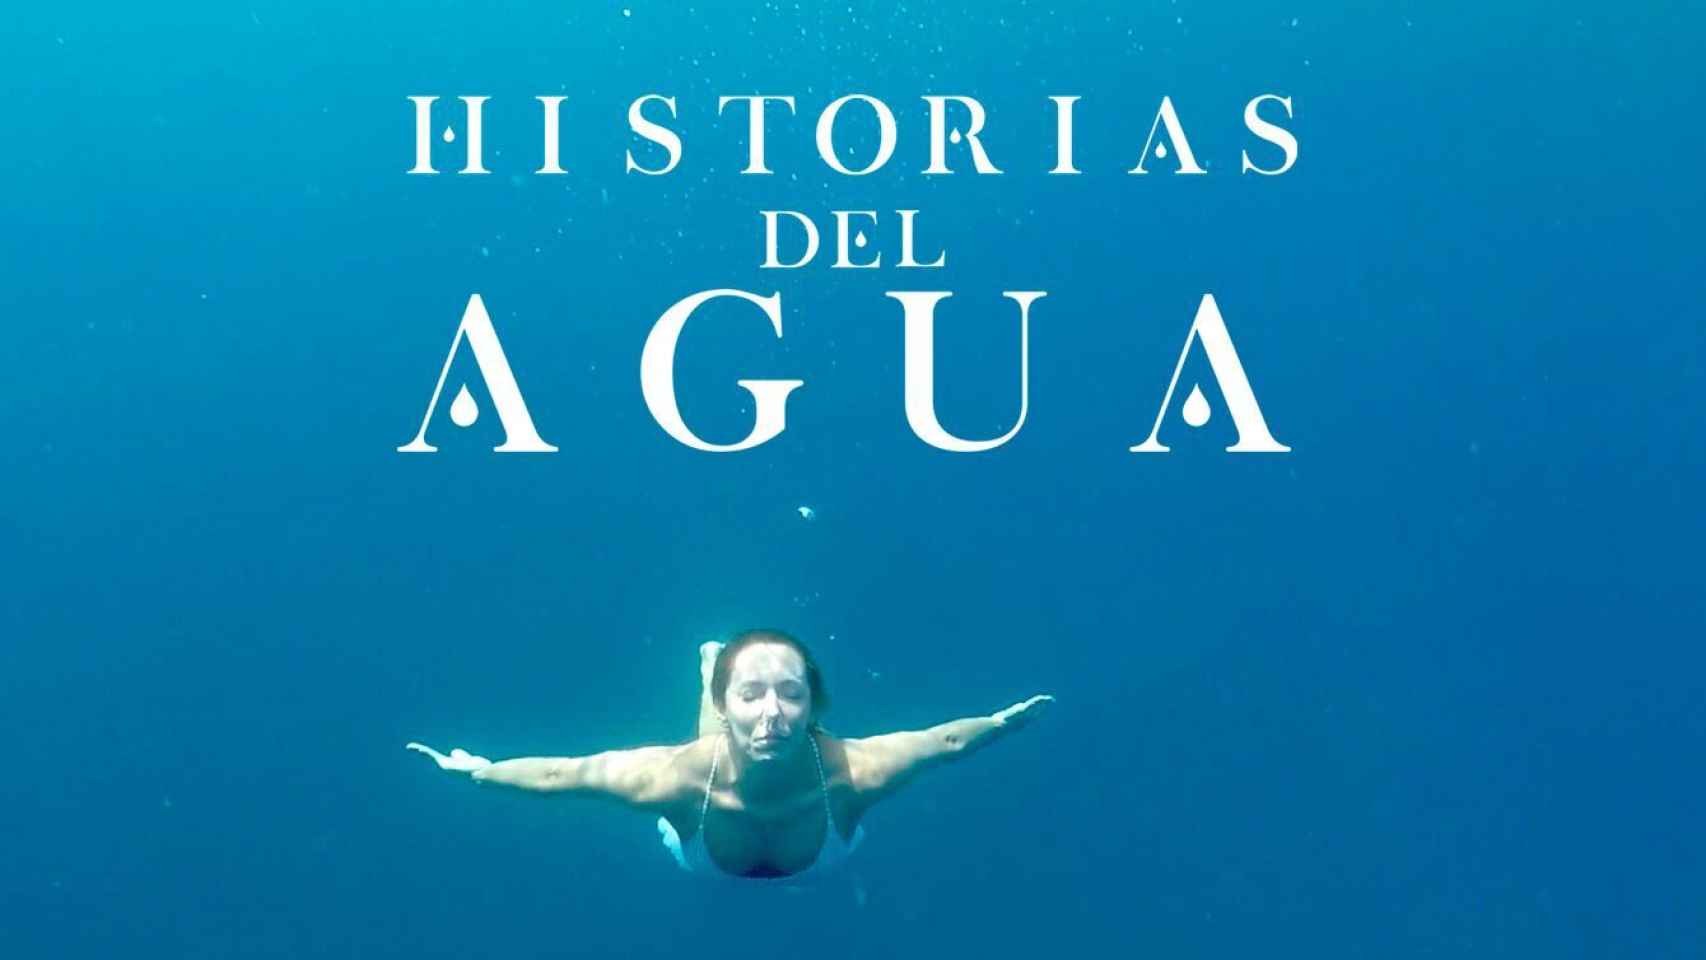 'Historias del agua'.